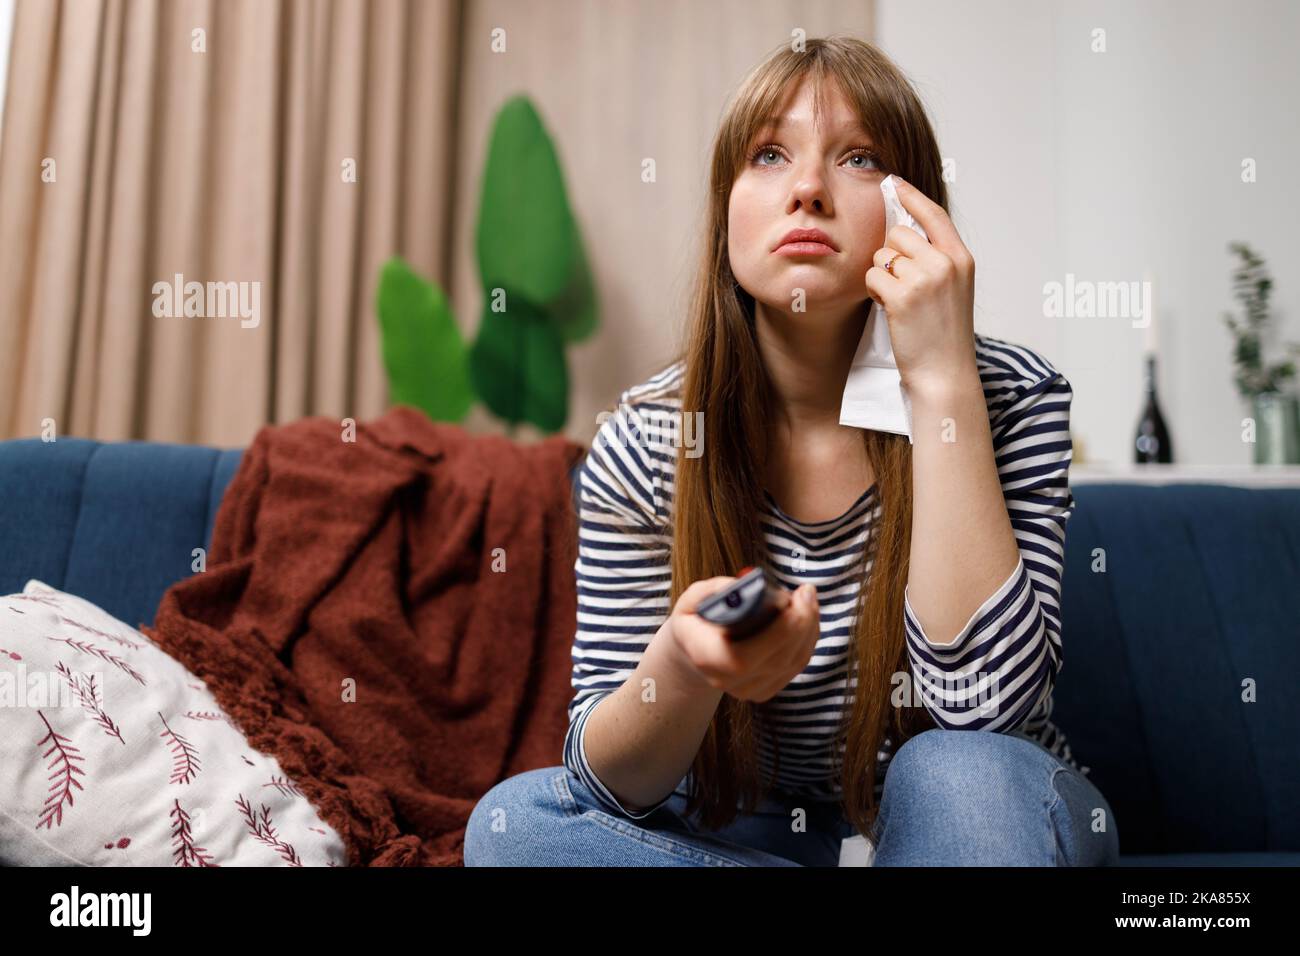 Traurige junge Frau, die mit Seidenpapier und Fernbedienung in der Hand auf dem Sofa sitzt und einen Kinofilm im Fernsehen sieht Stockfoto